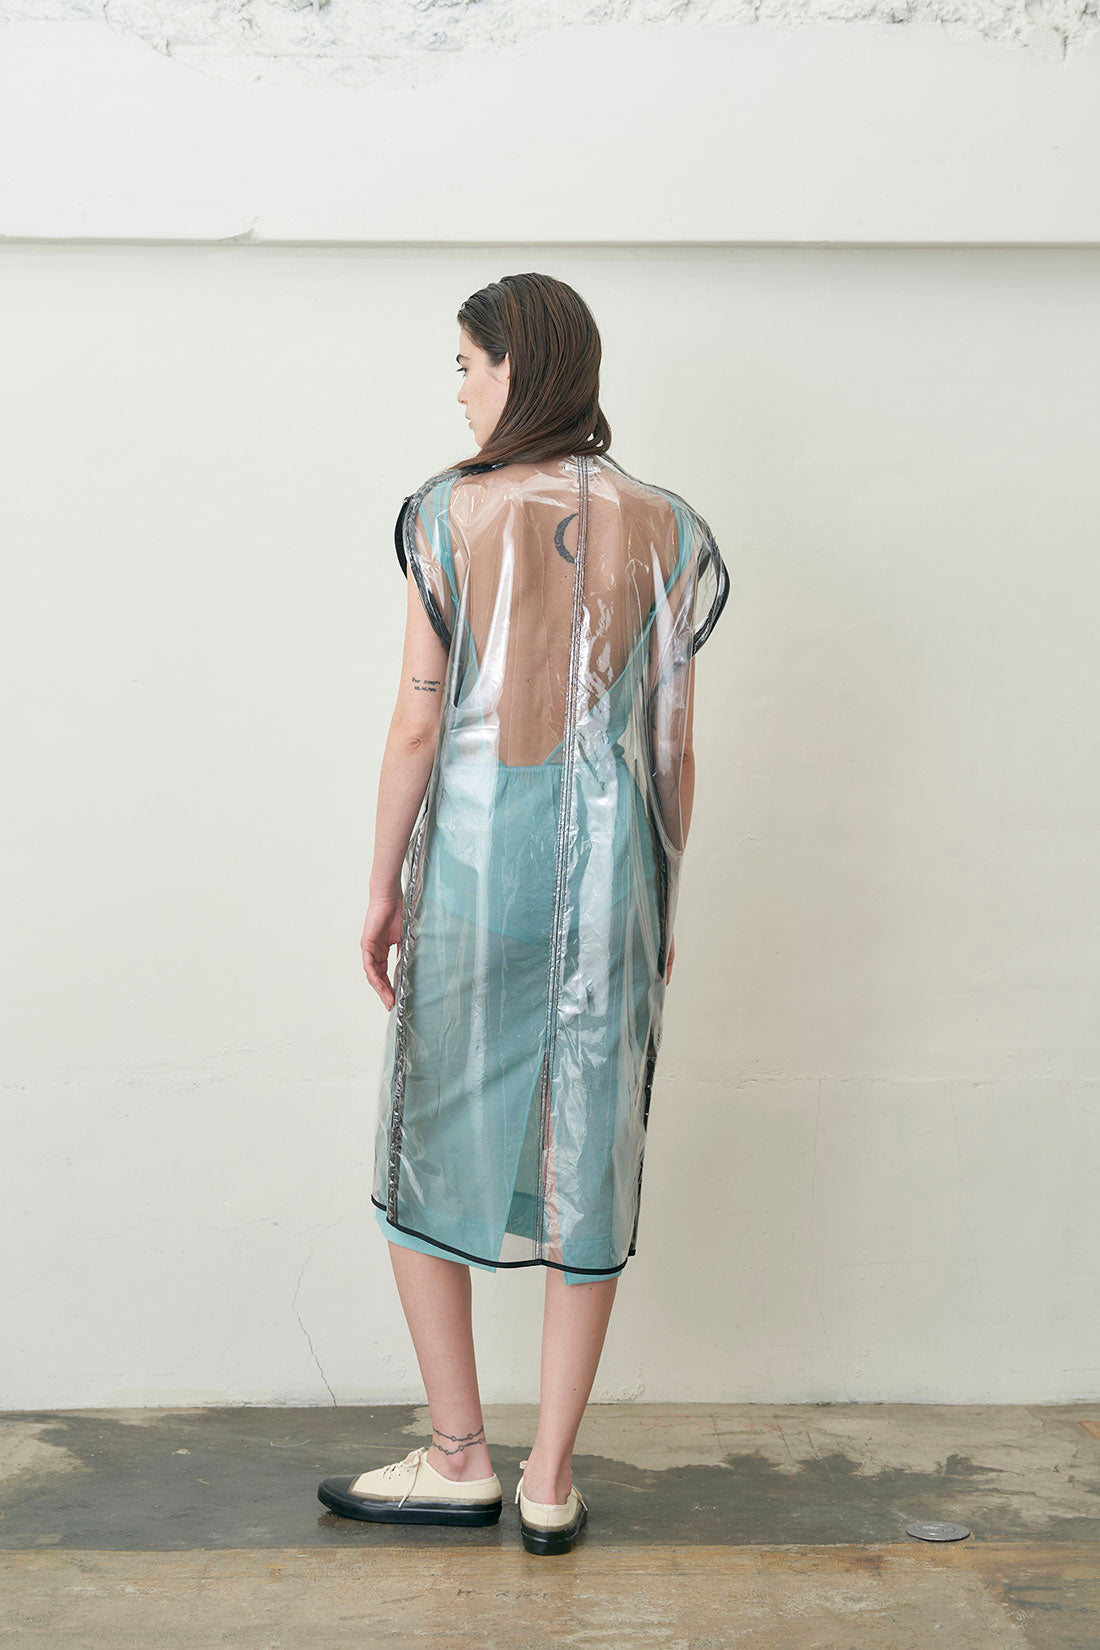 Vinyl/Tulle Garment Bag Dress